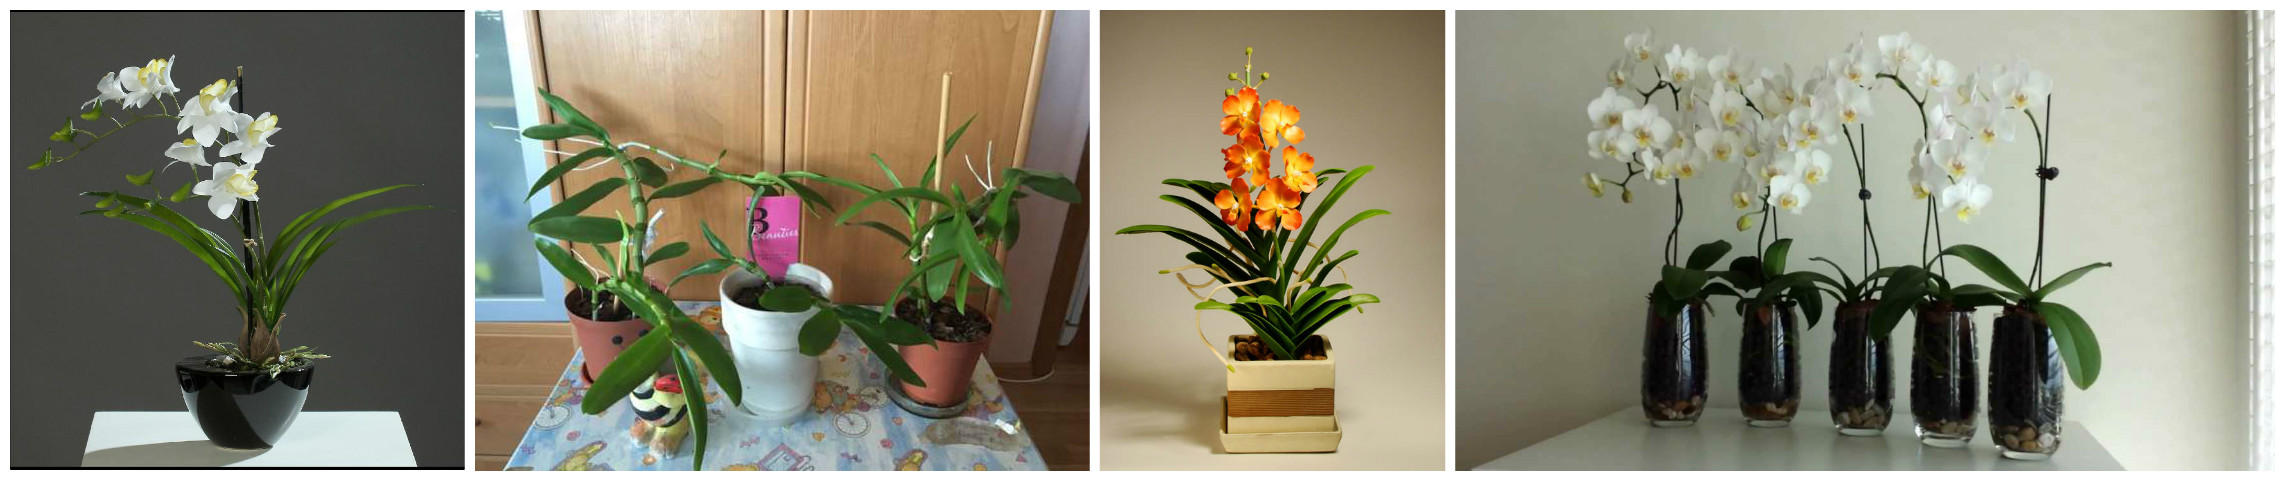 Орхидея Дендробиум: выращивание и уход от А до Я (ИНФОГРАФИКА)